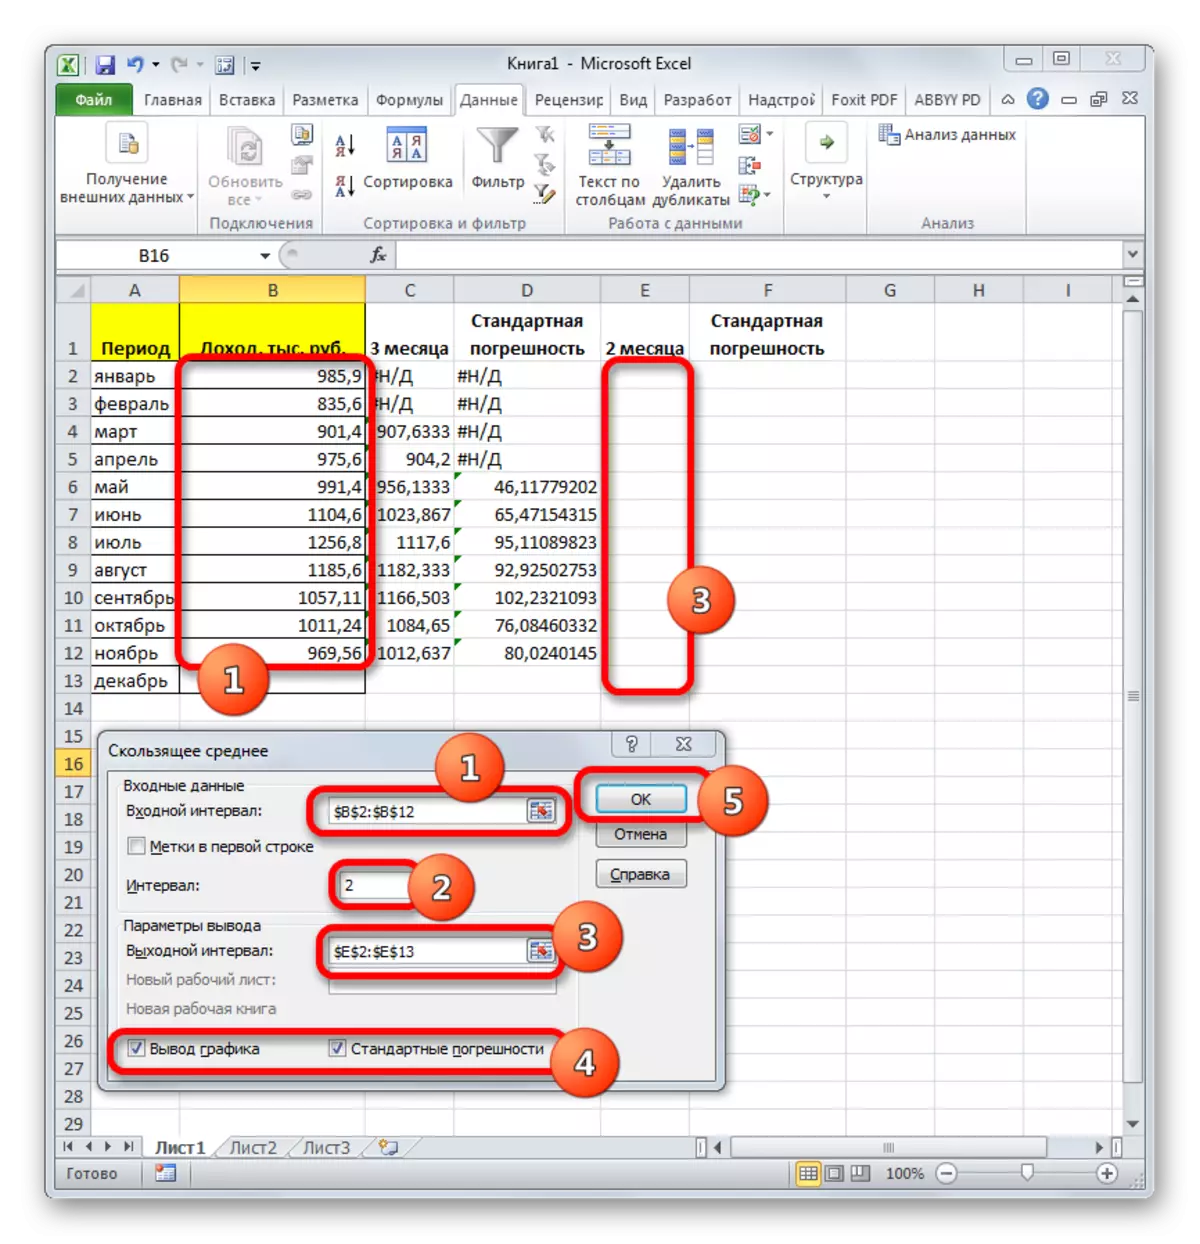 データ分析ツールウィンドウMicrosoft Excelプログラムで中央の移動